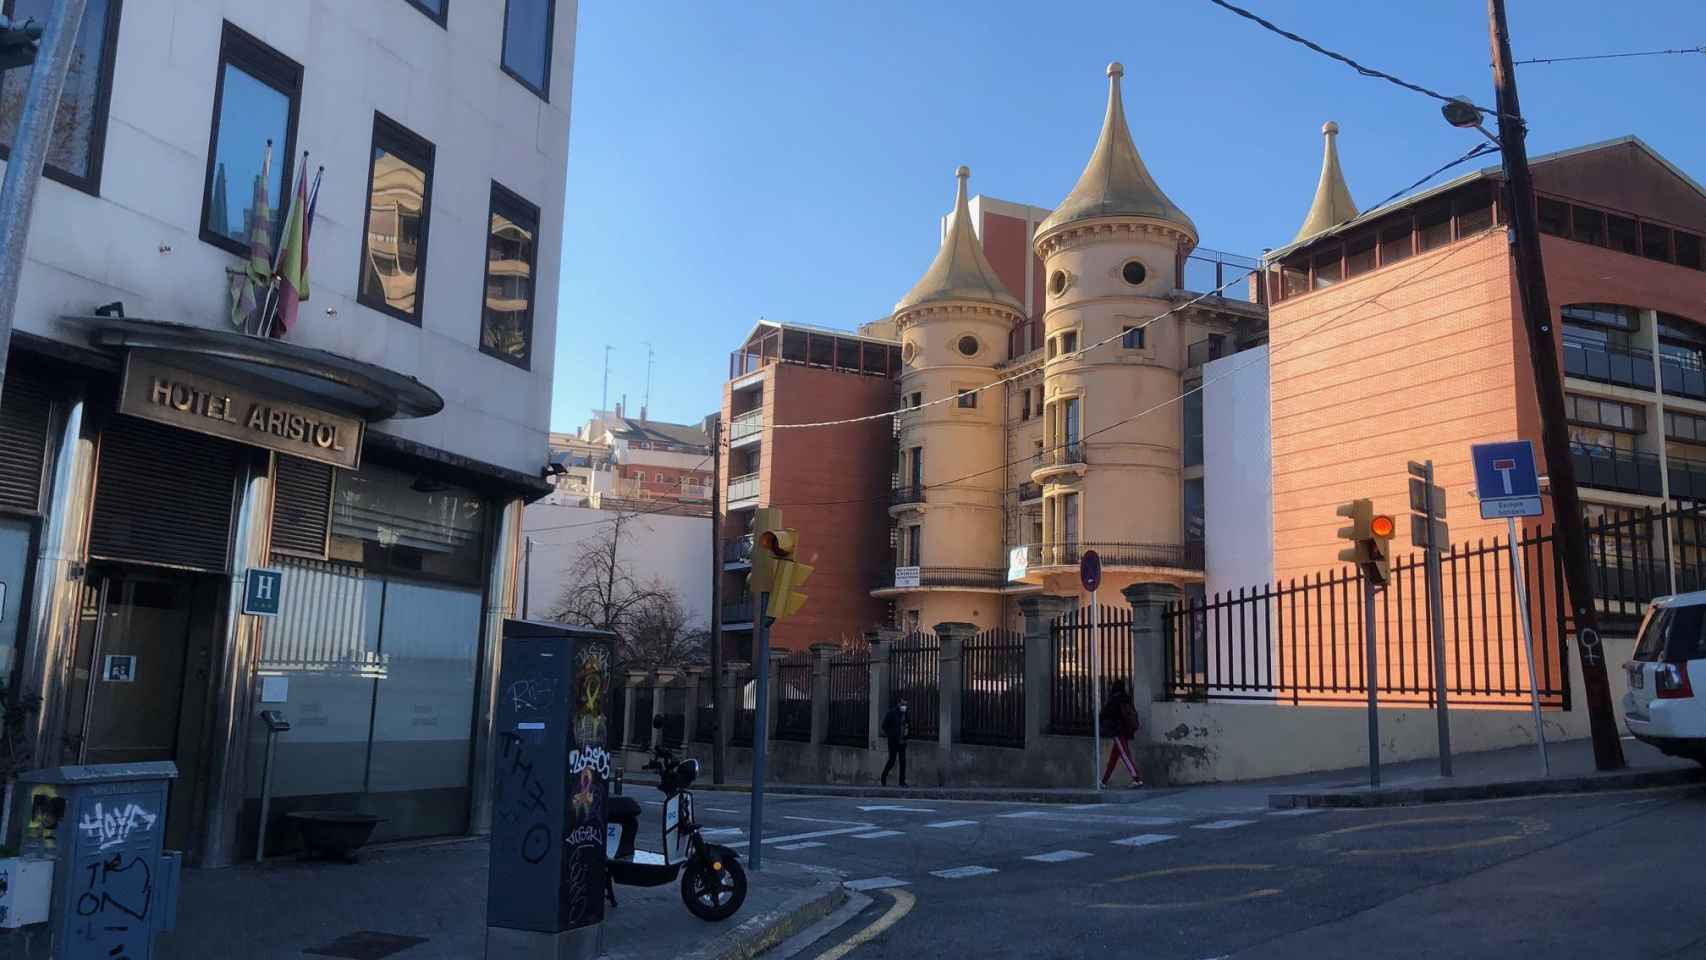 A la izquierda, el Hotel Aristol, donde se ubicará el albergue para personas sin hogar toxicómanas de Barcelona; a la derecha, la escuela de infantil y primaria Mas Casanovas / CG